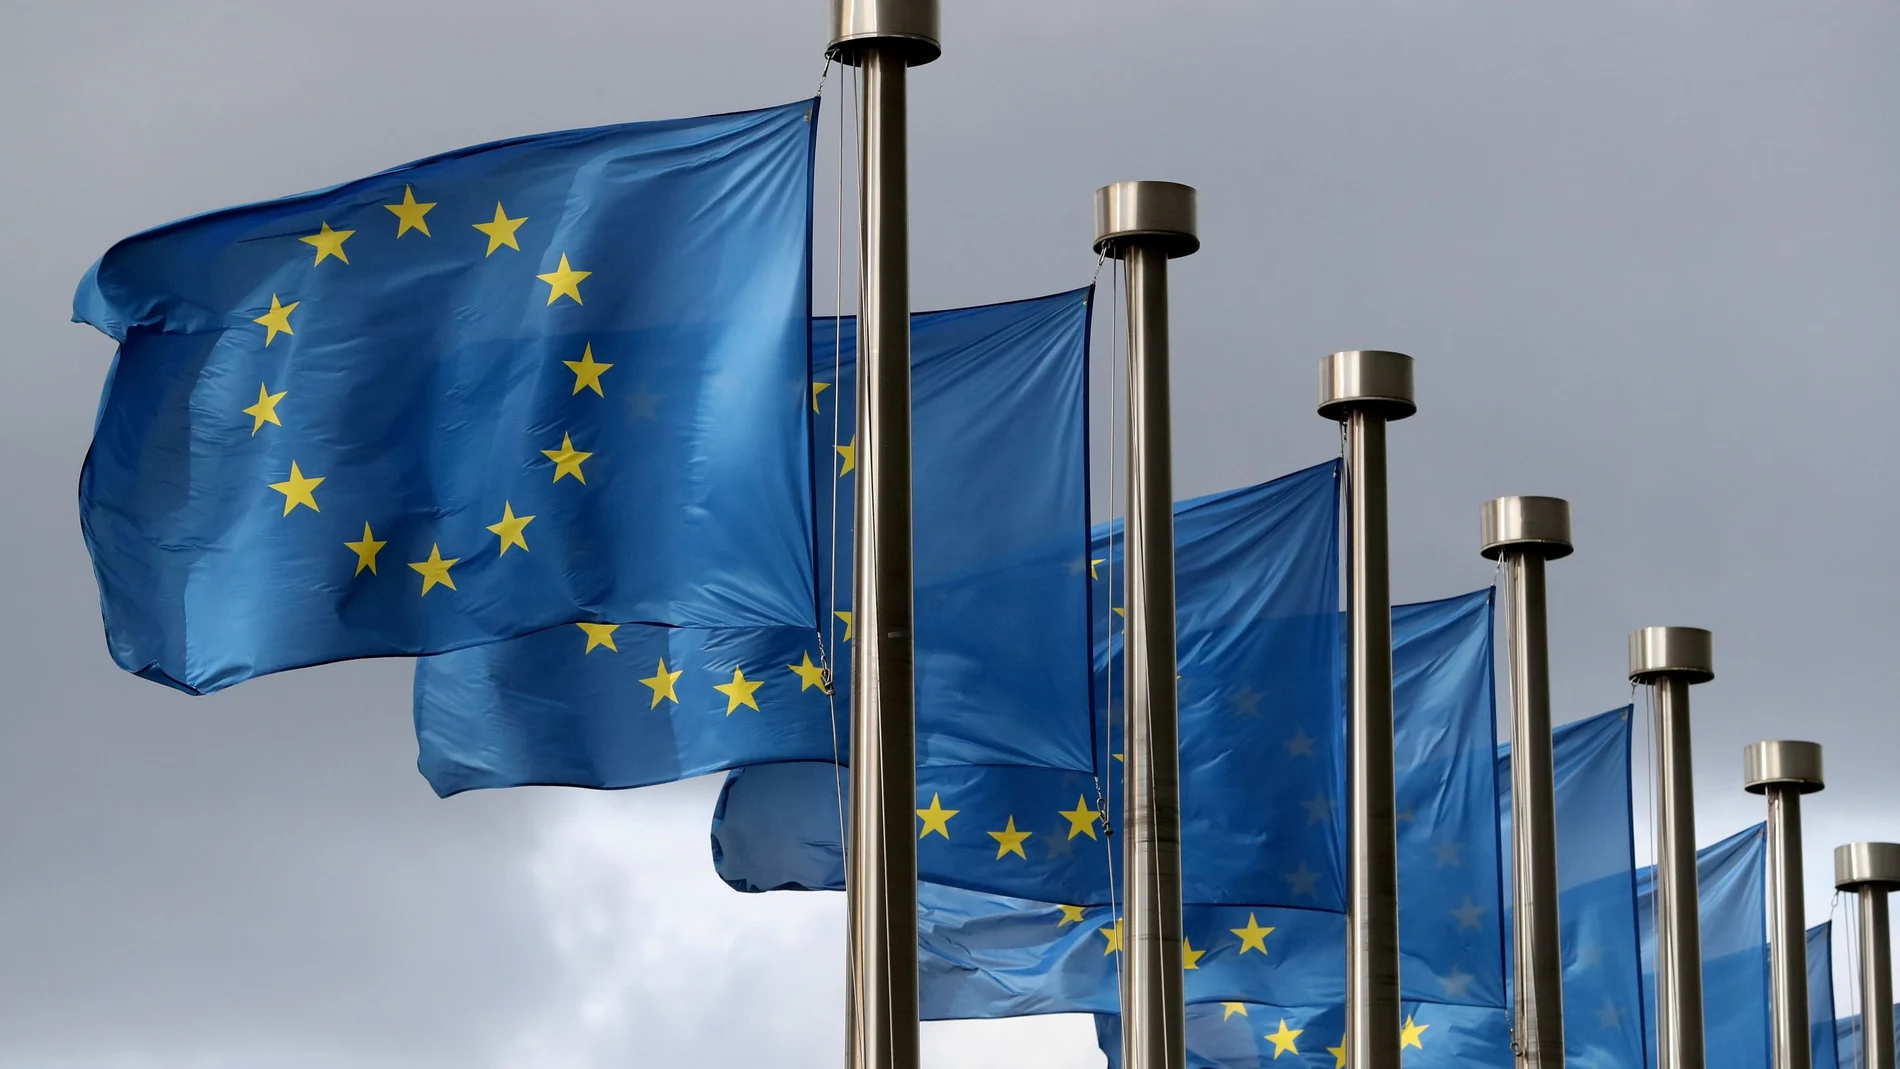 Banderas europeas ondean al viento en al sede de la Comisión Europea en Bruselas